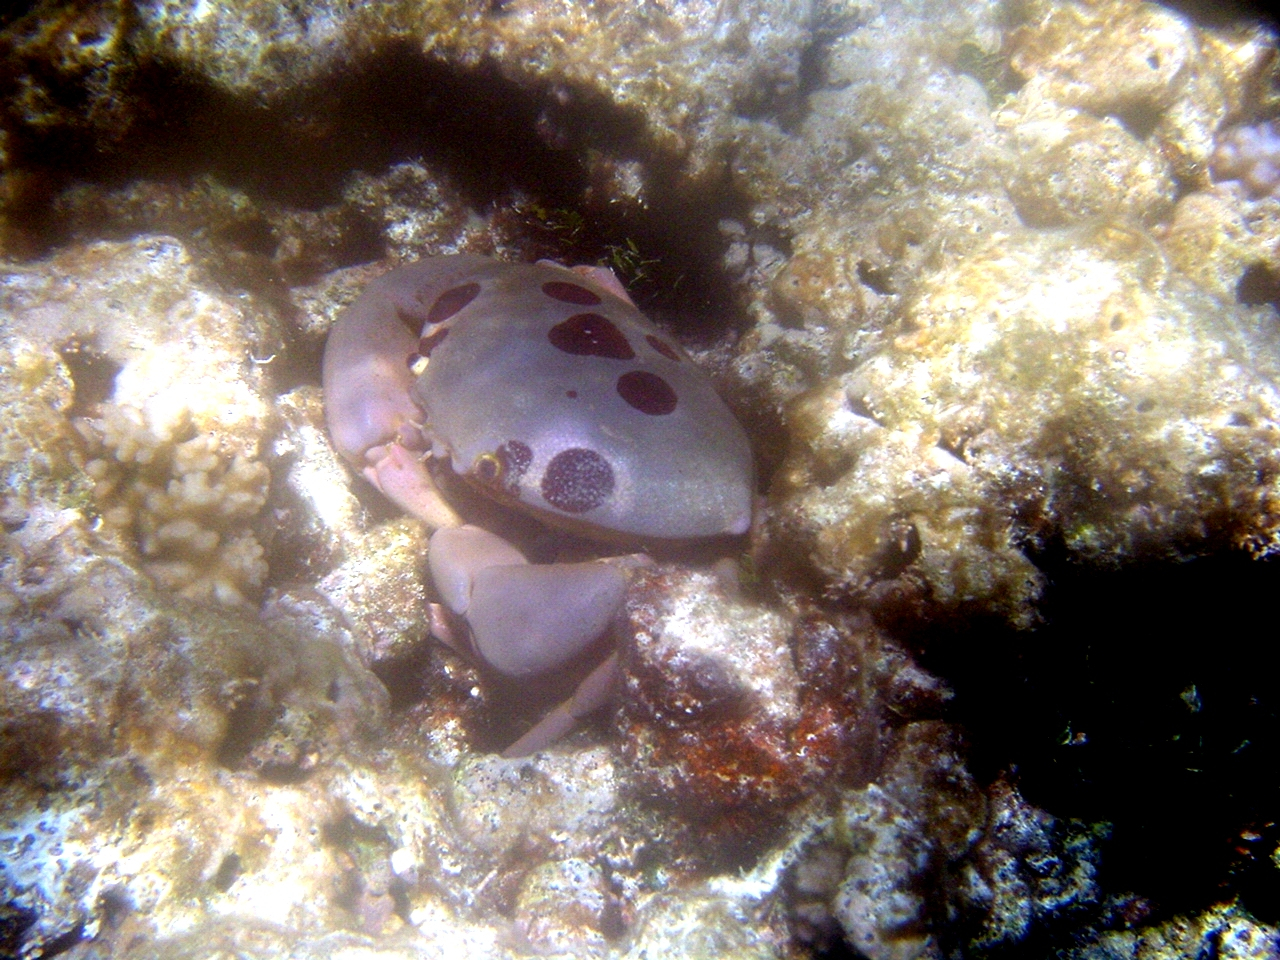 A purple crab, called a seven-eleven crab, (Carpilius maculatus)